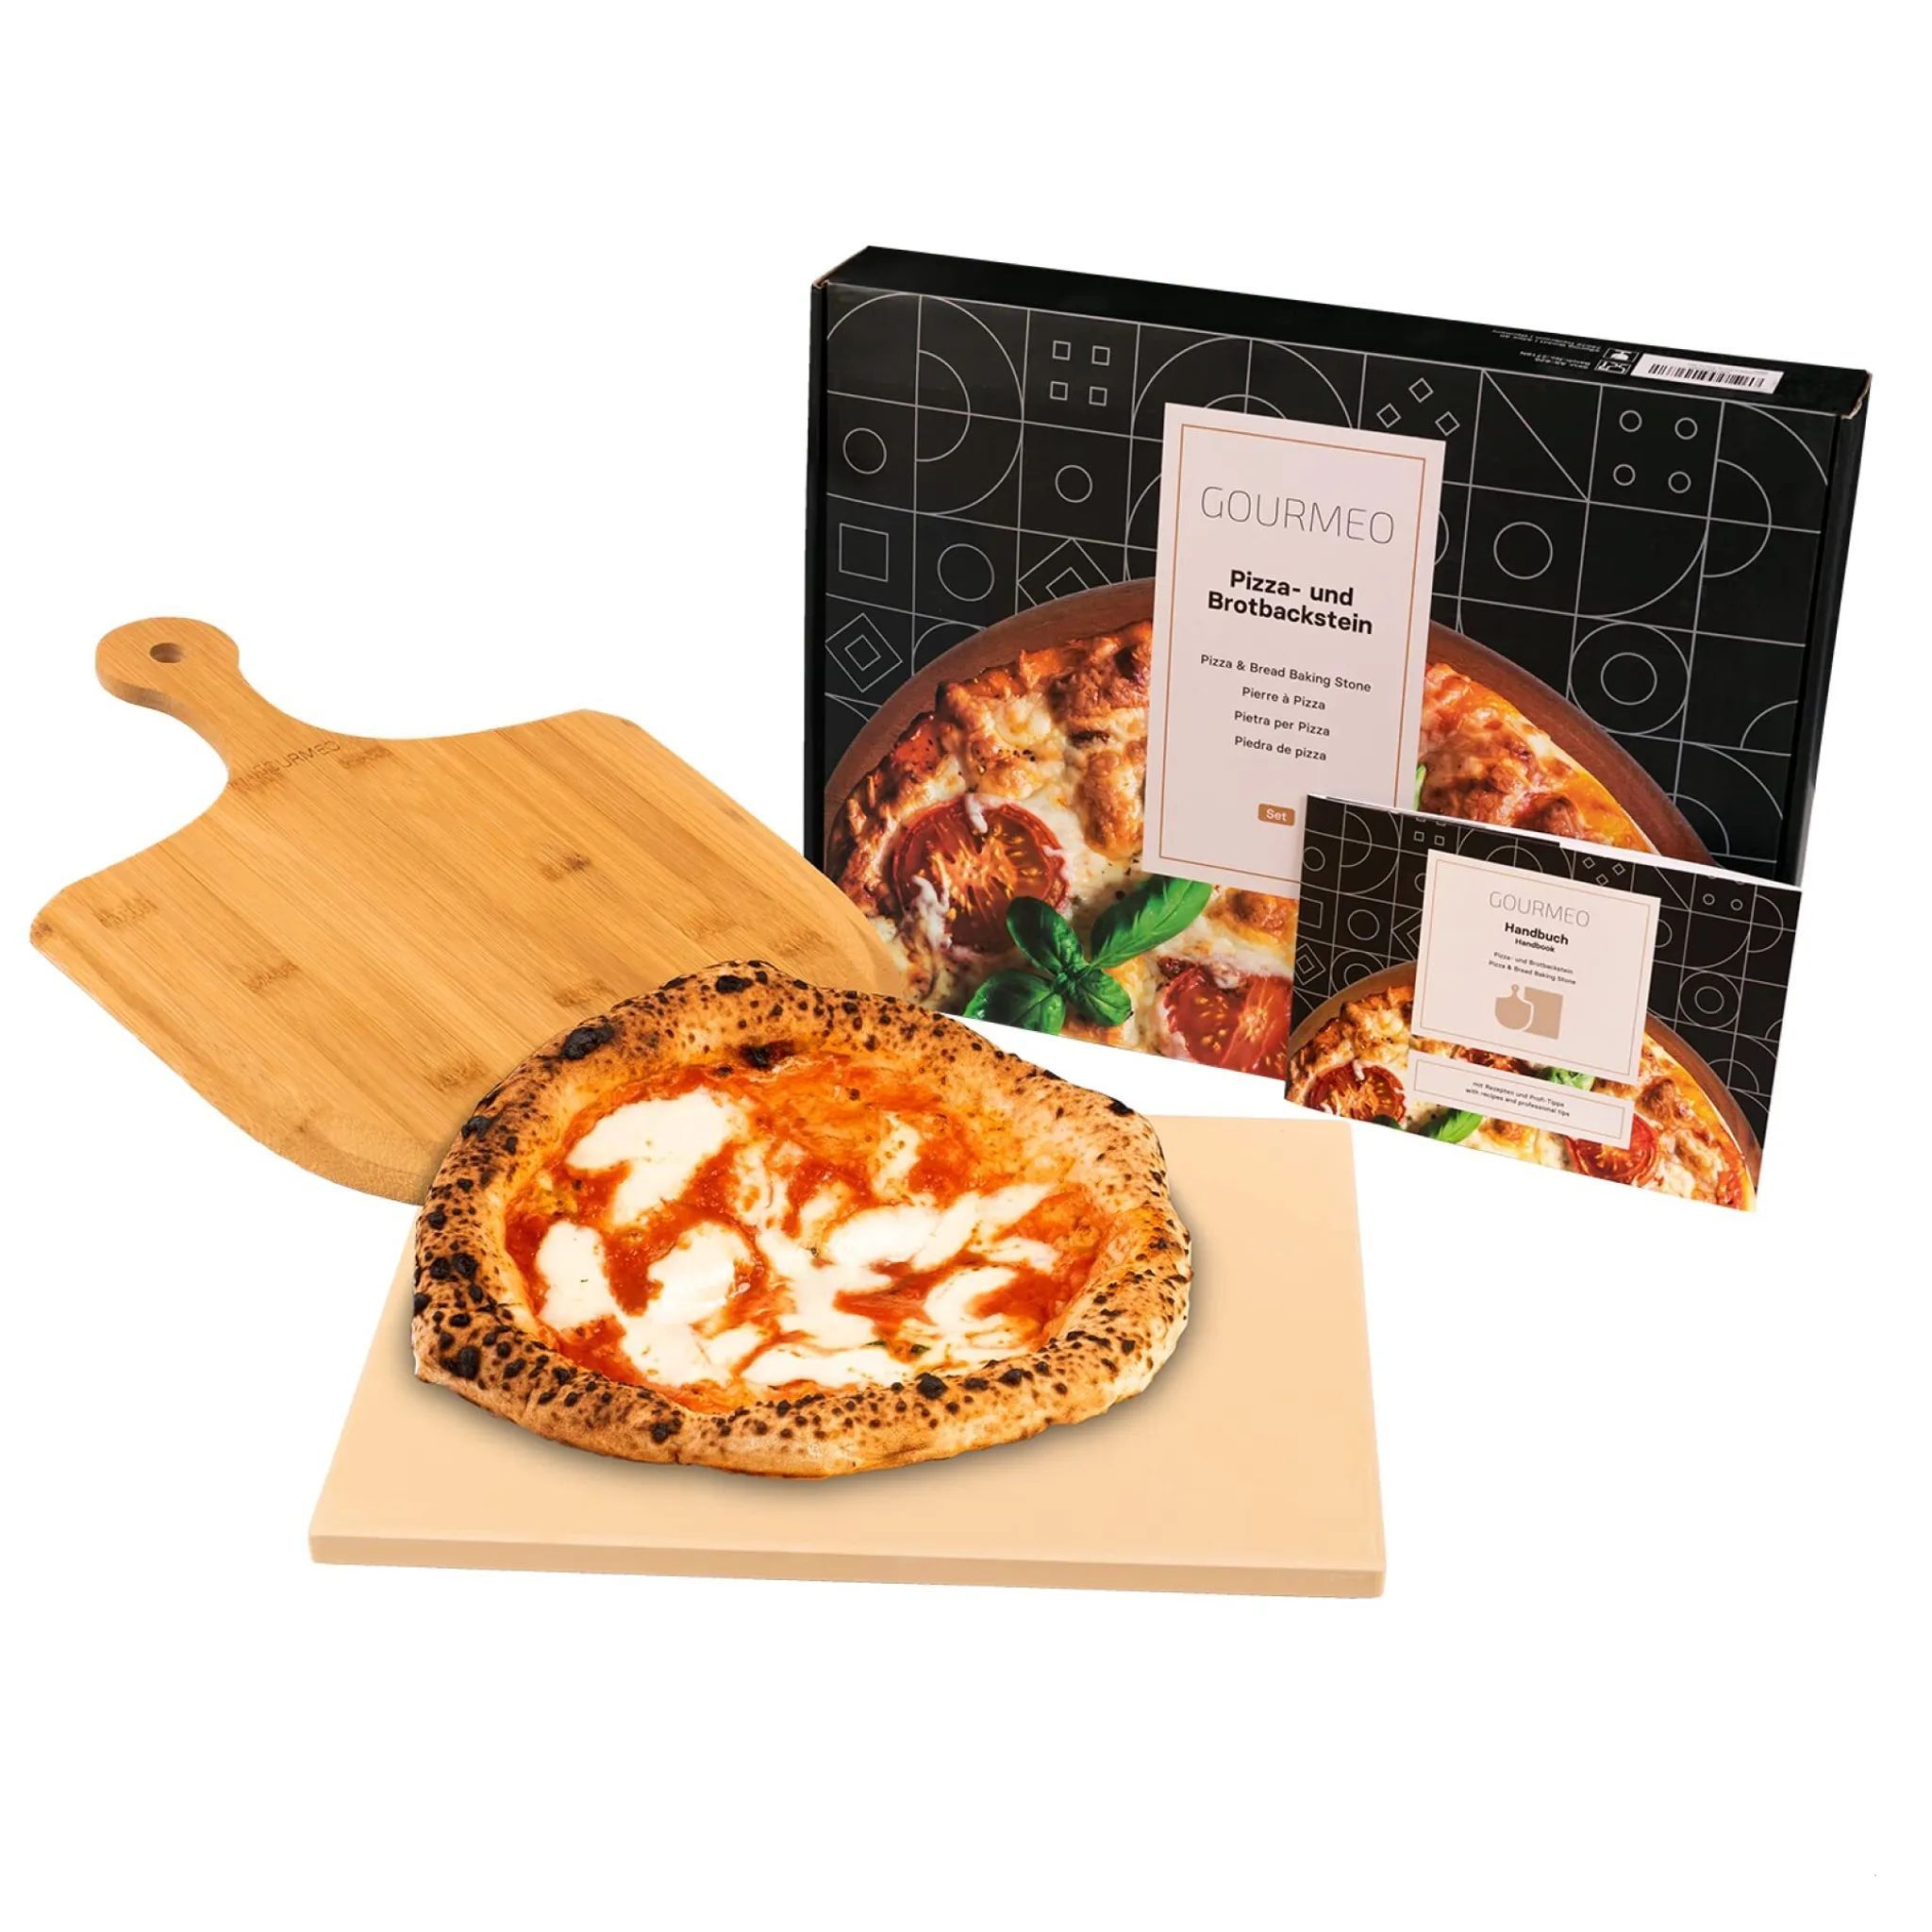 GOURMEO Pizzastein Set mit Bambus-Schaufel – 38x30cm Eckig – Cordierite Pizza Stein für Backofen, Gasgrill & Grill – Gleichmäßige Hitzeverteilung & leichte Reinigung